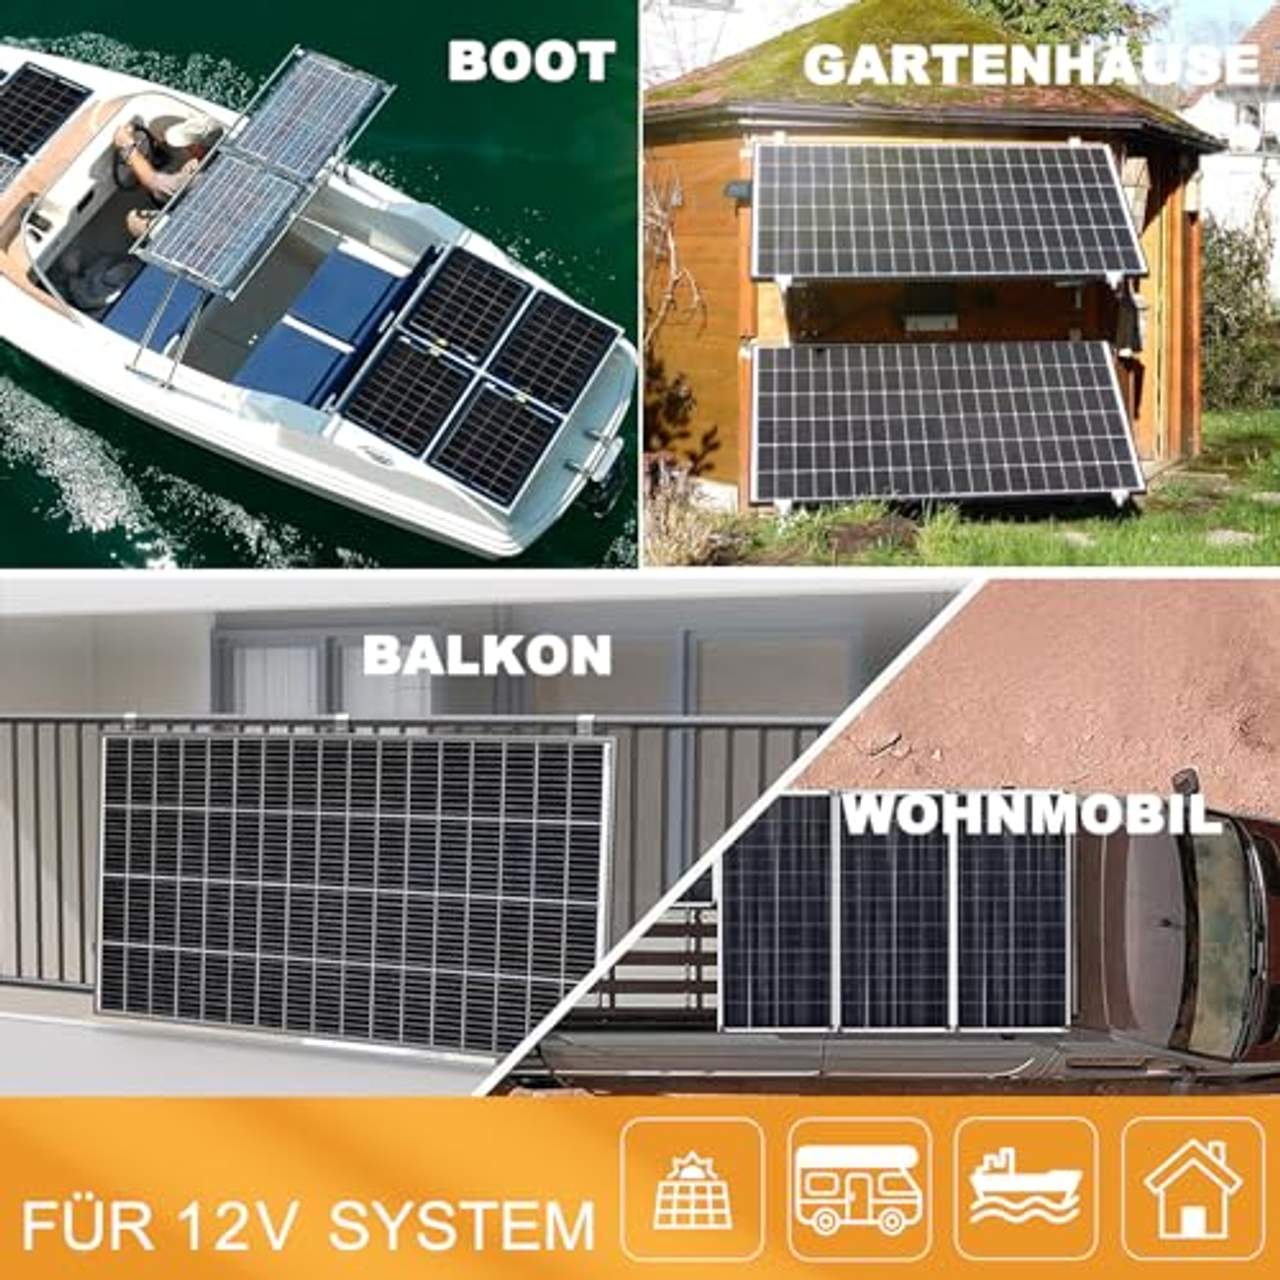 enjoy solar Mono 170W 12V Monokristallines Solar panel 170 Watt  